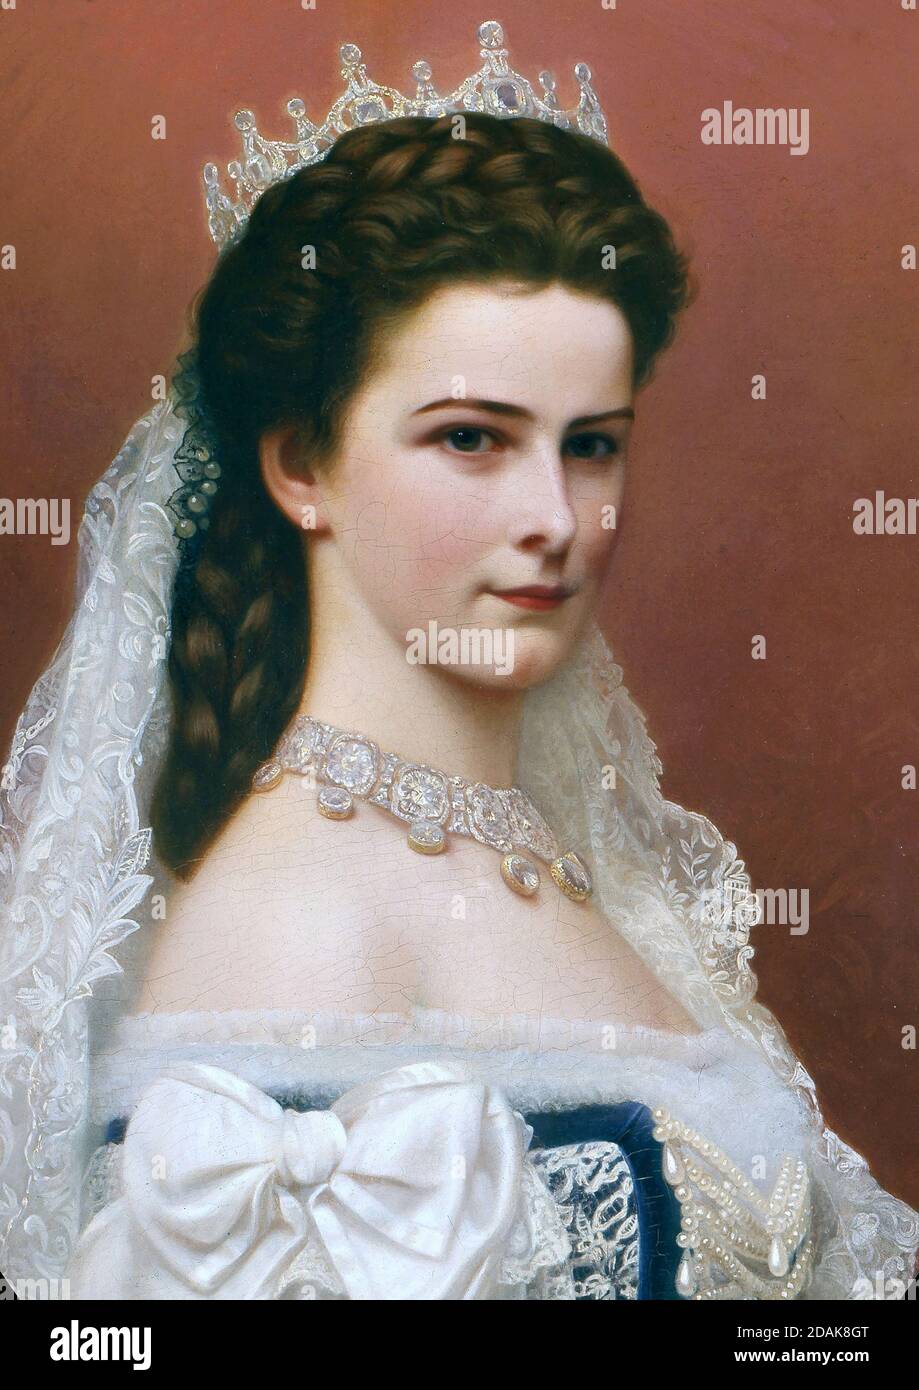 Retrato de la emperatriz Isabel de Austria, conocida como Sisi - después de Georg Raab Foto de stock